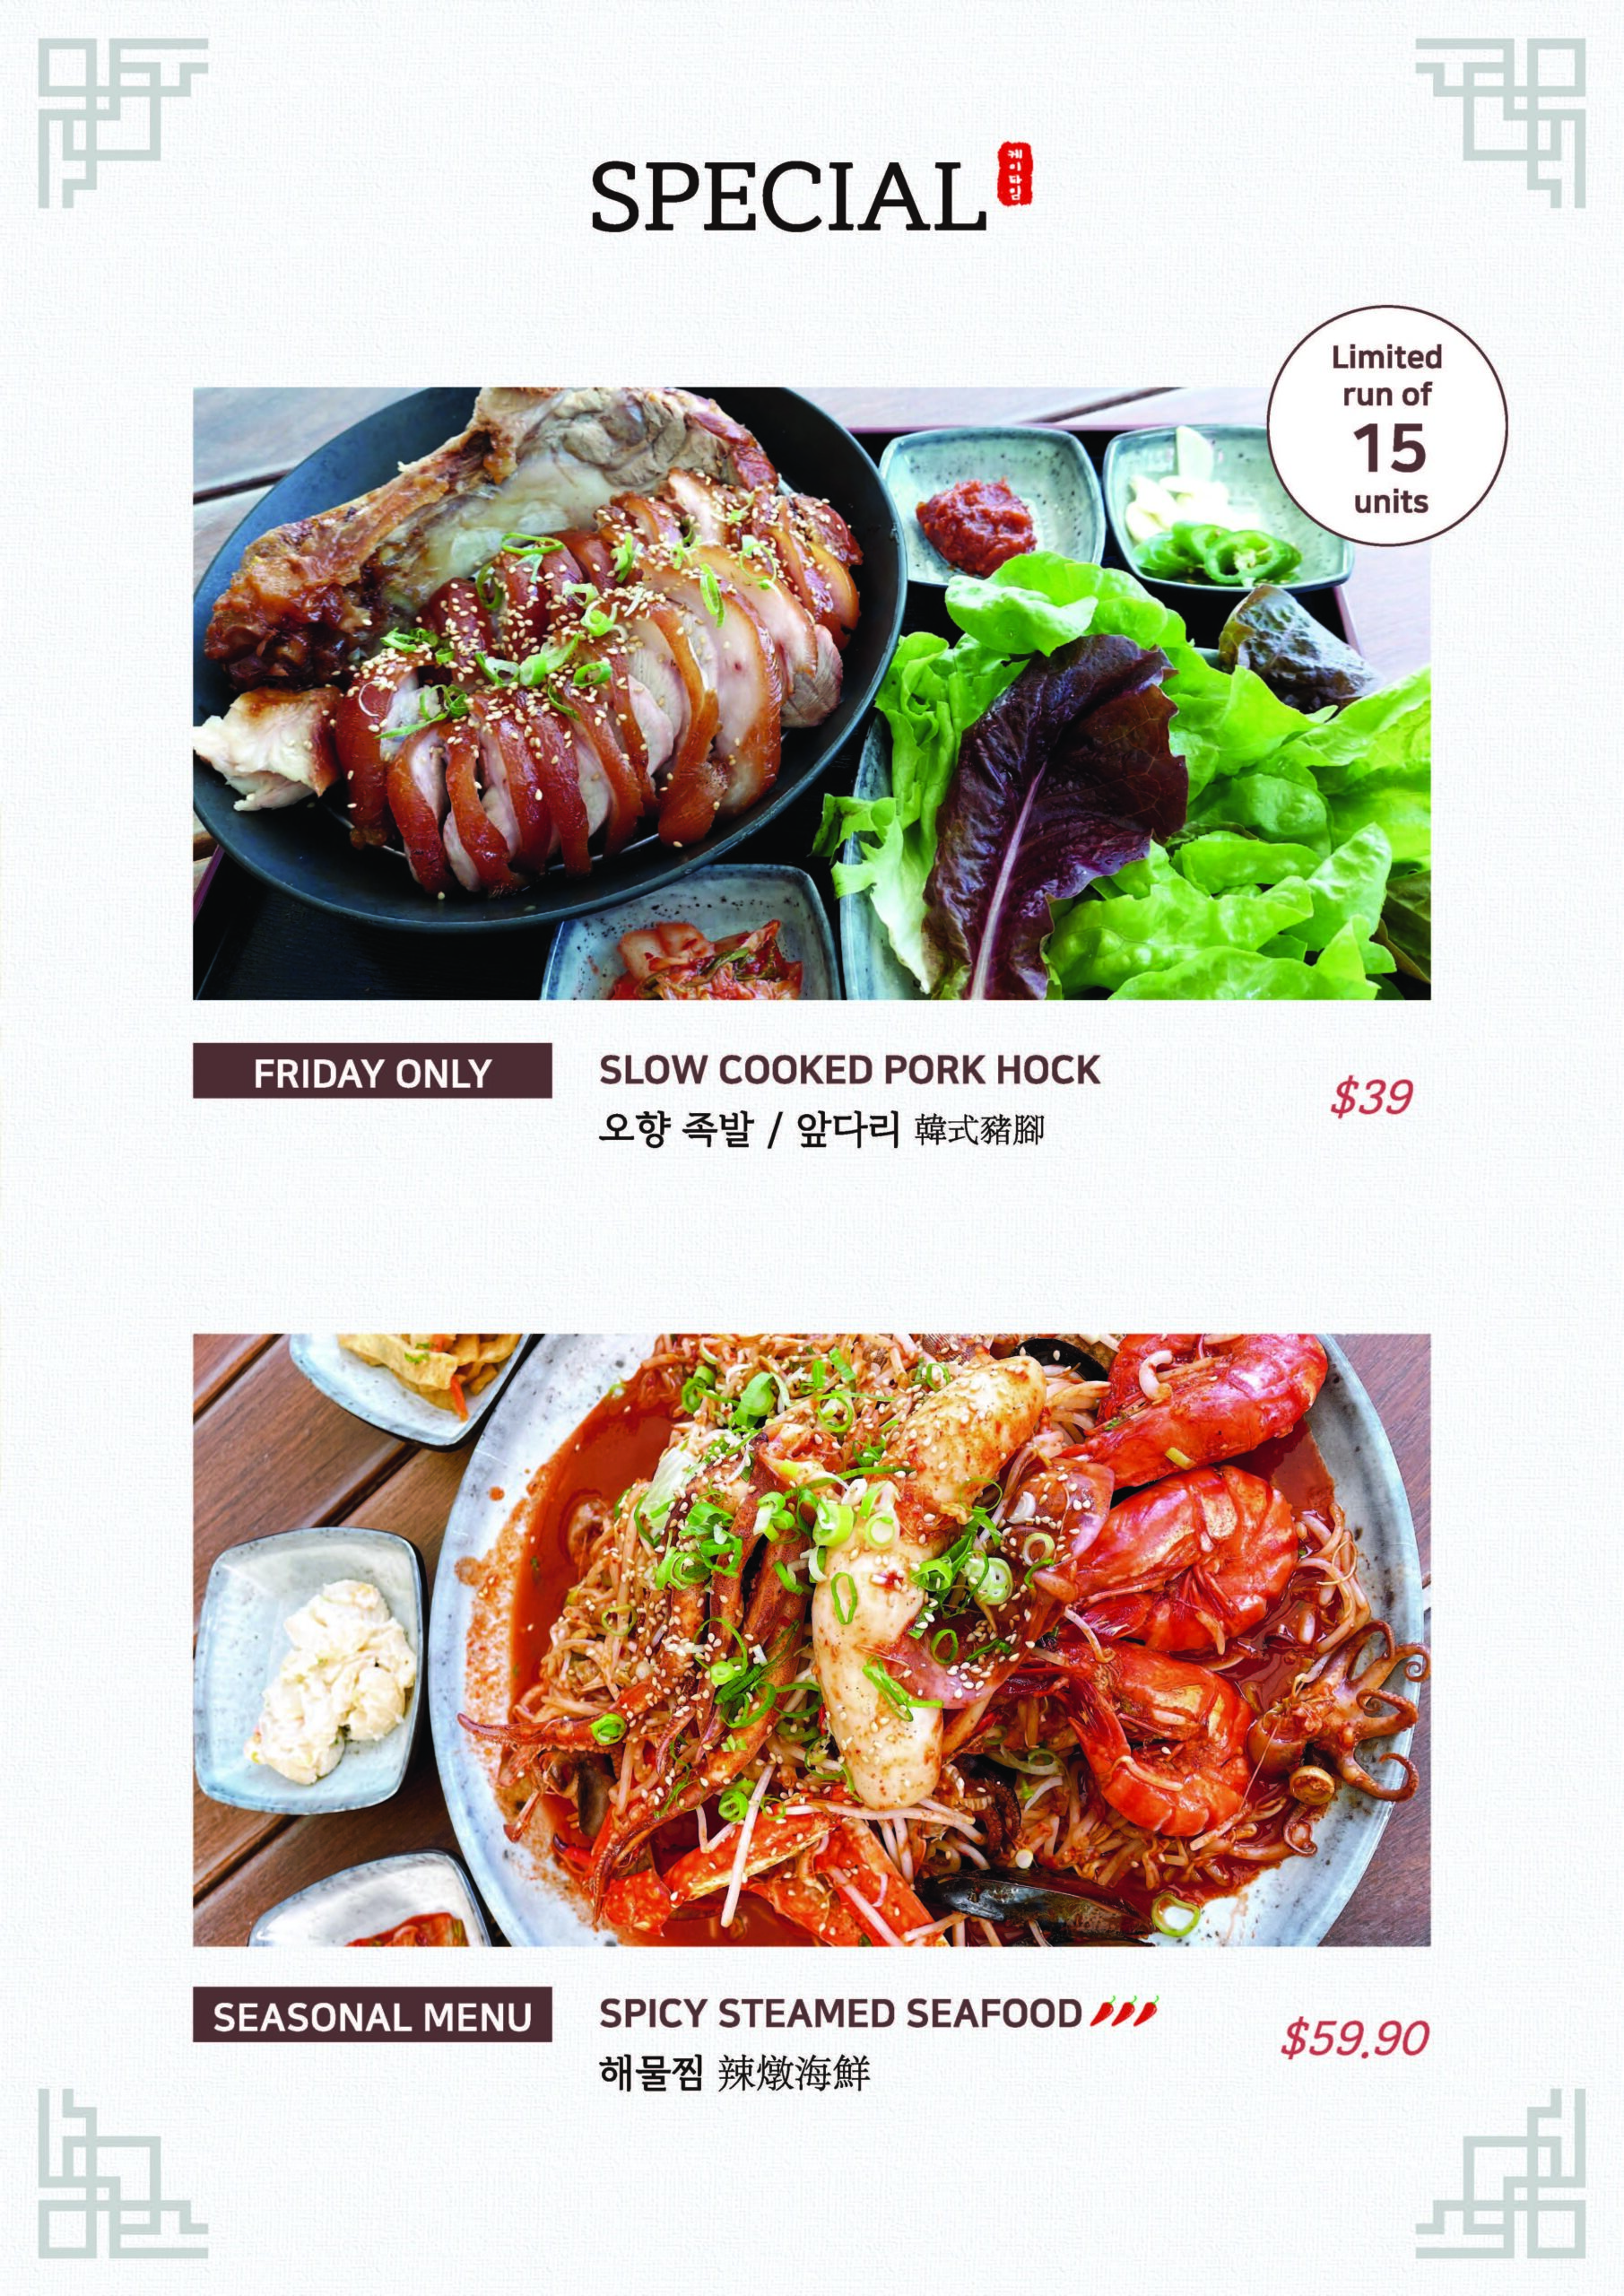 K Time BBQ Korean Restaurant Asian Food Menu